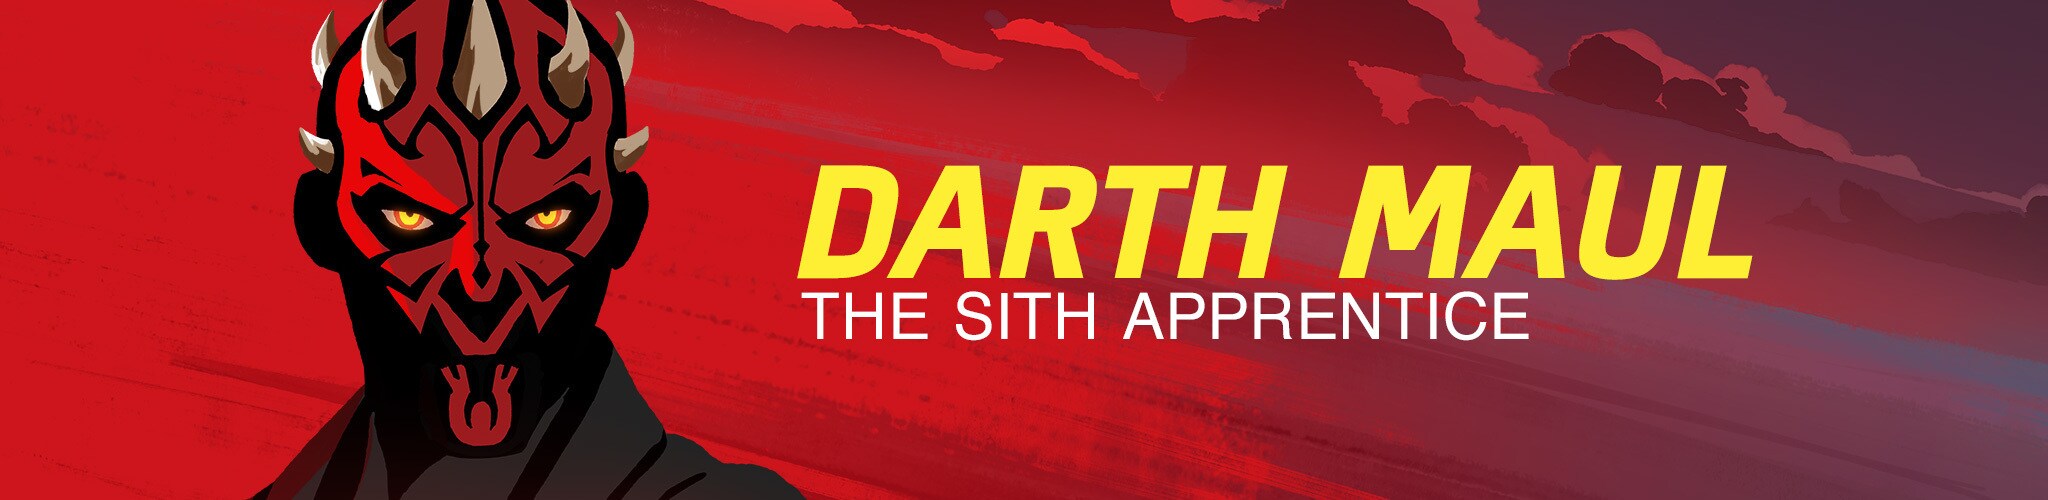 Darth Maul - The Sith Apprentice